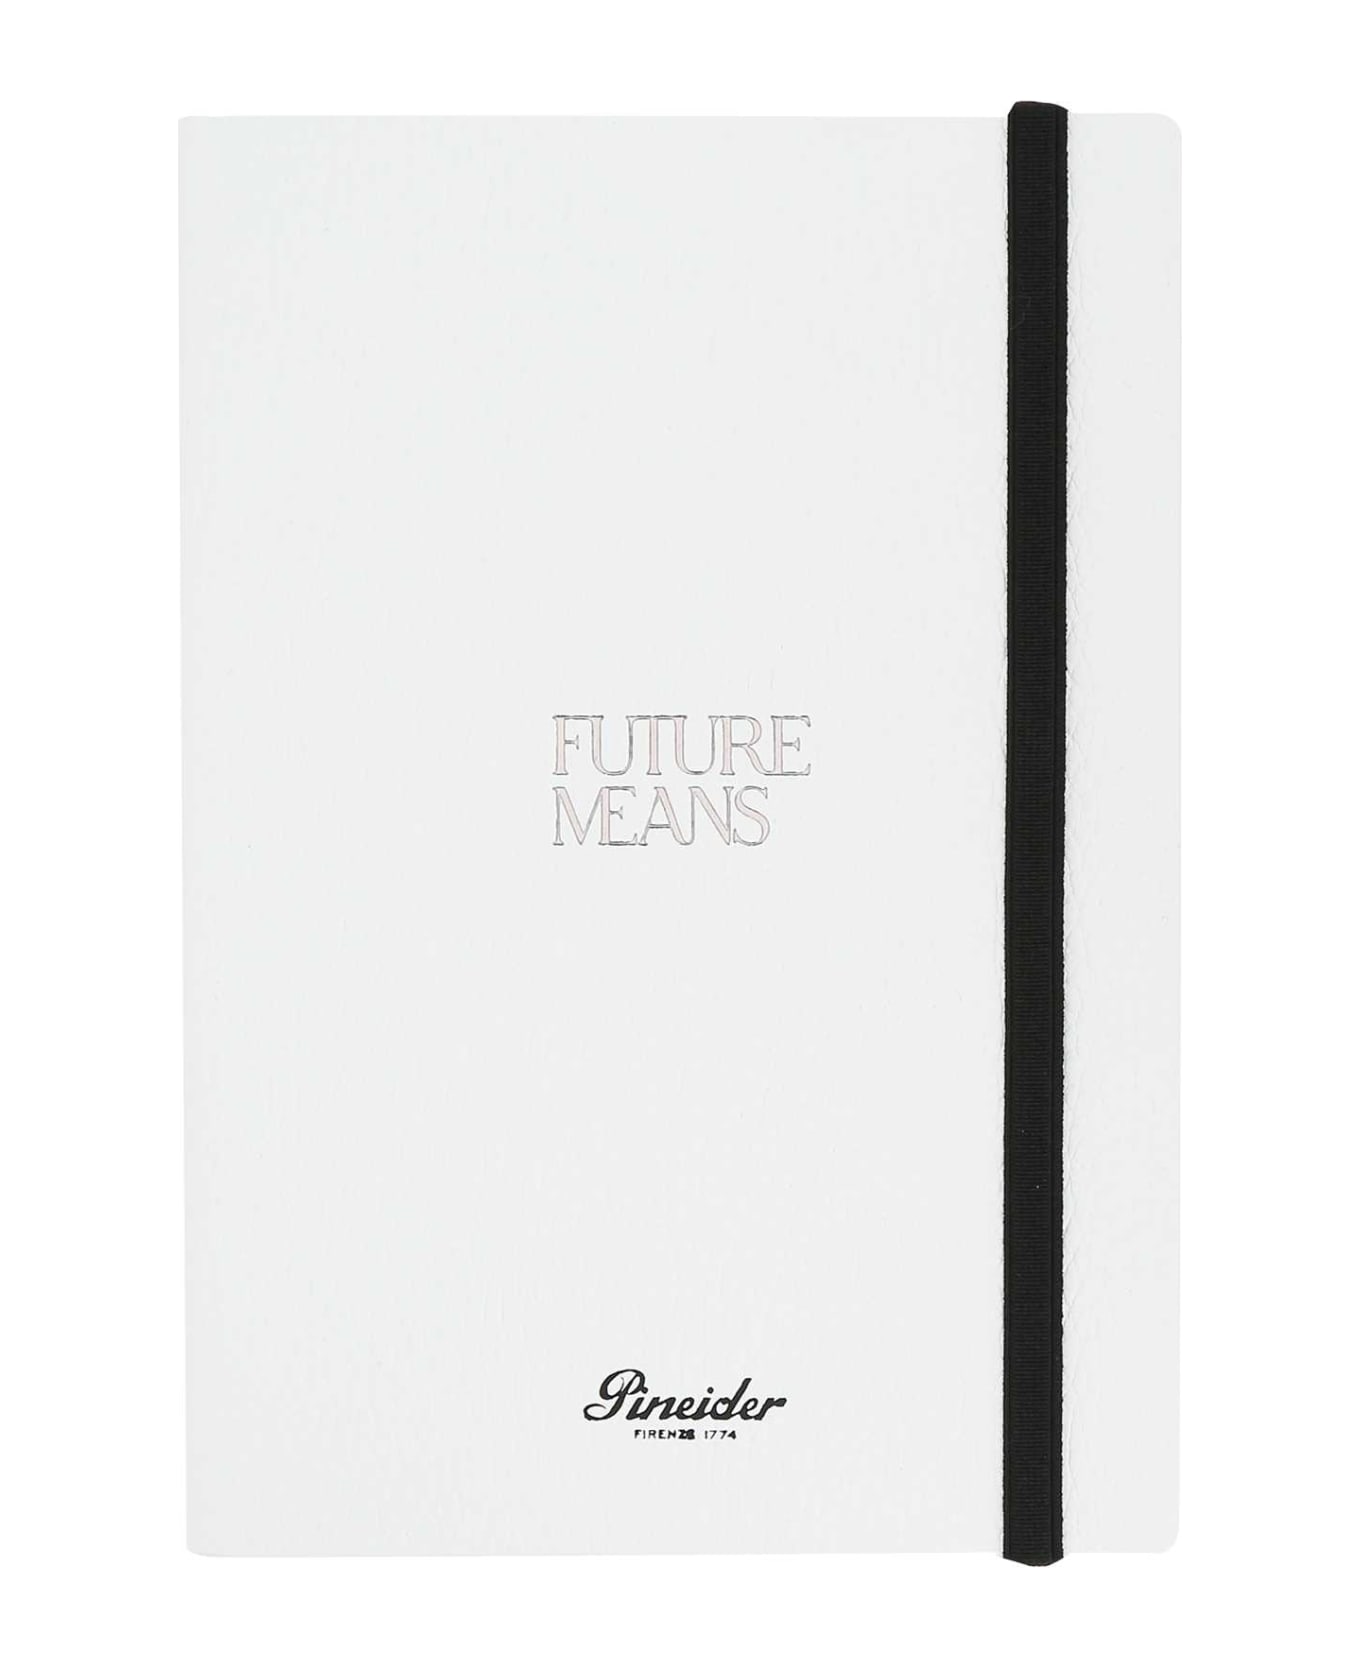 Pineider White Leather Future Means Diary - WHITE